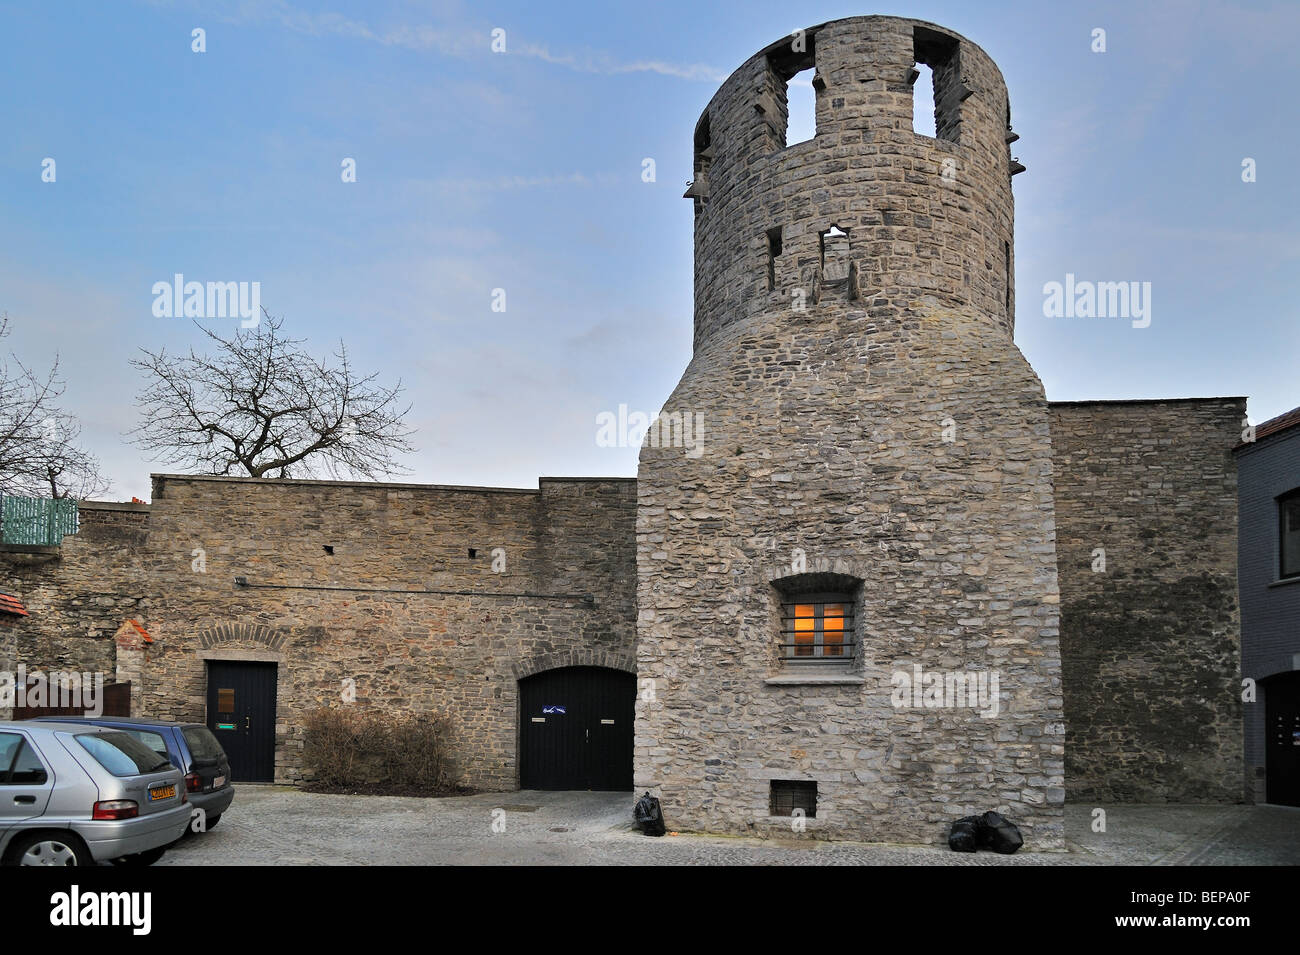 La tour Tour de l'Impasse du Cygne, une partie de la ville rempart, Tournai, Belgique Banque D'Images